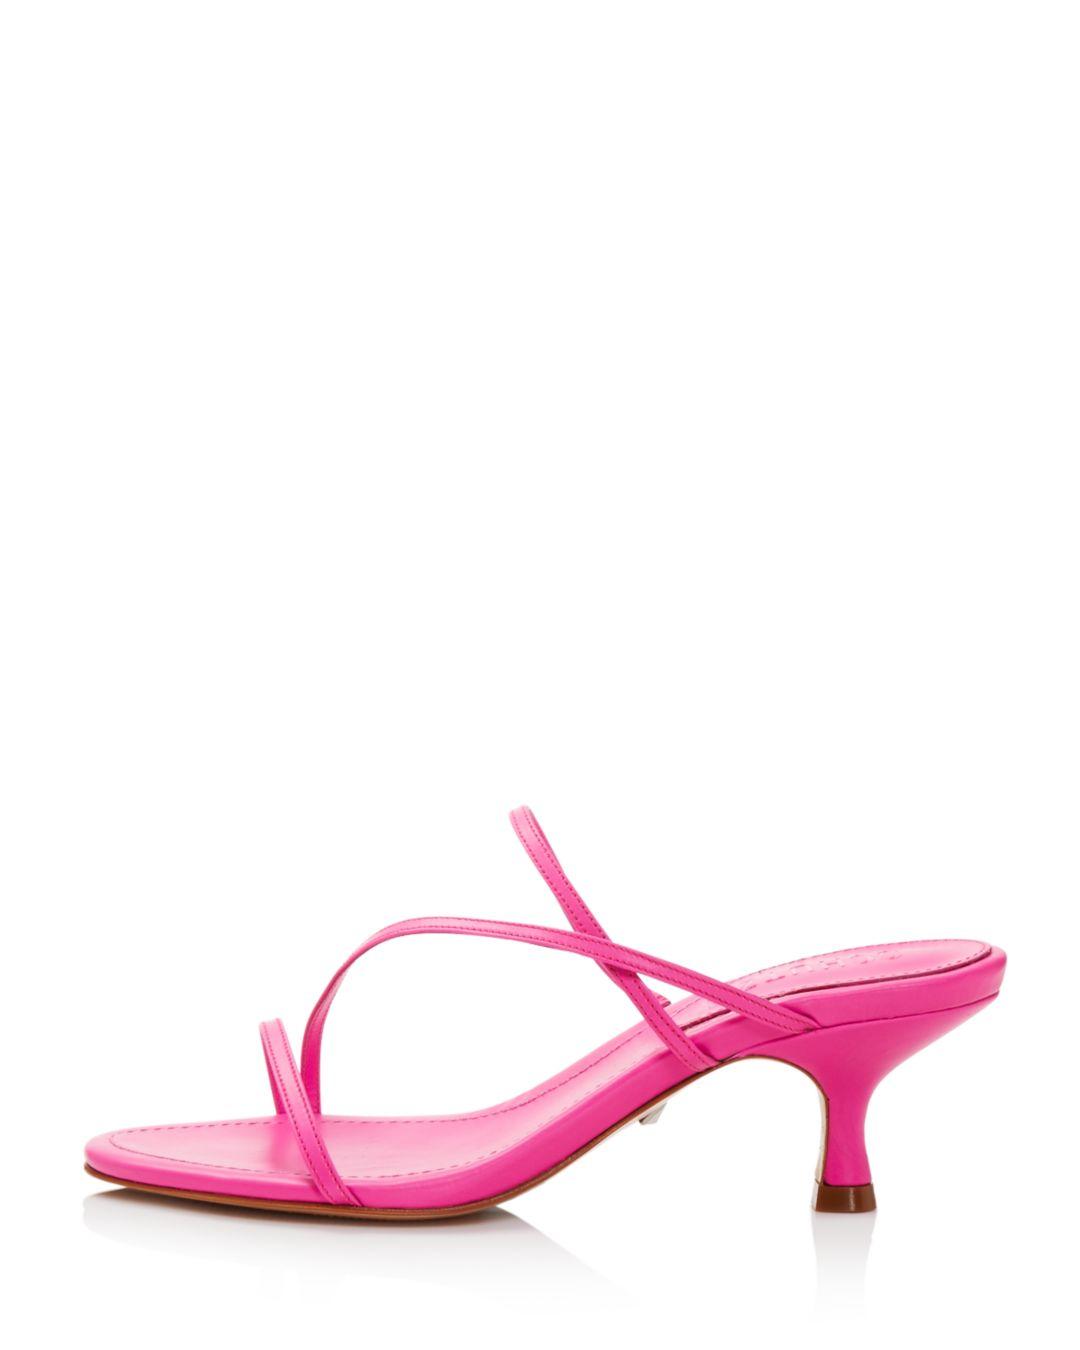 SCHUTZ SHOES Women's Evenise Kitten Heel Sandals in Pink | Lyst